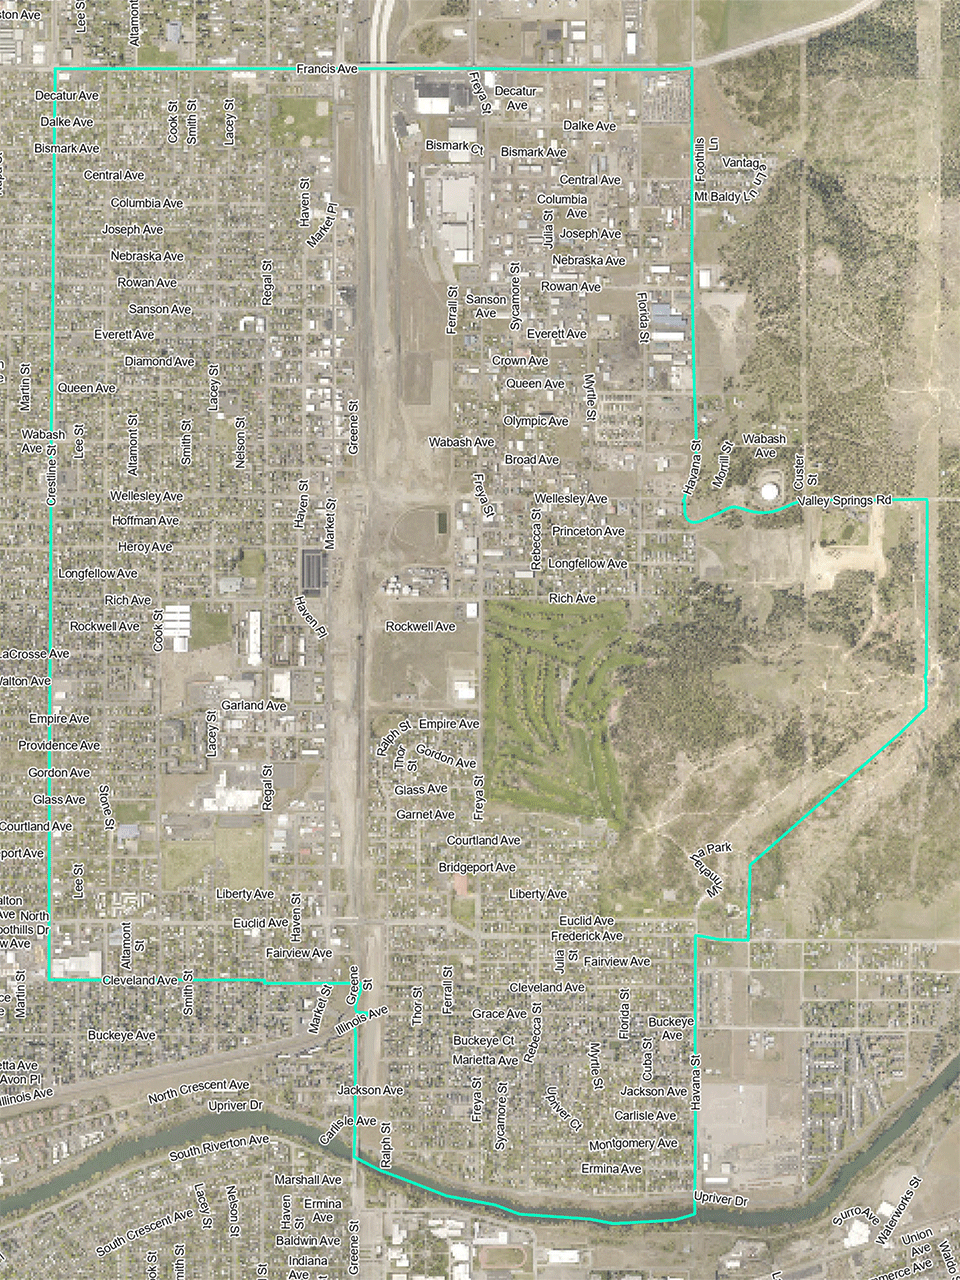 NE Spokane Brownfields Project Boundary Map